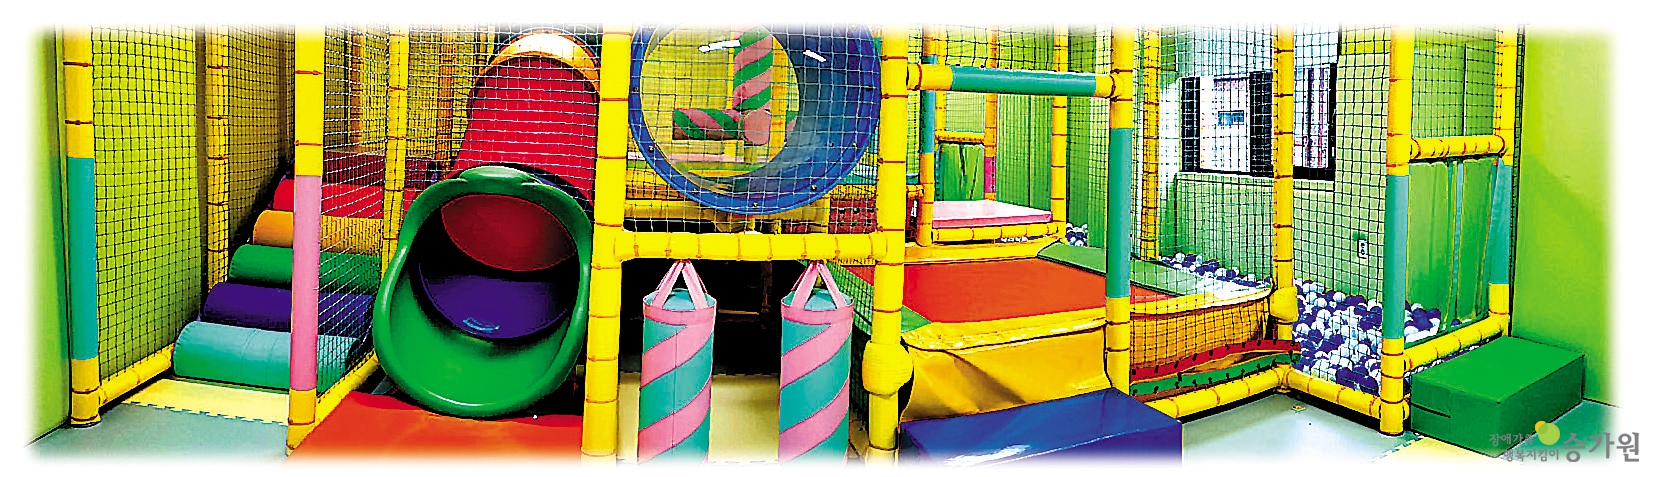 승가원행복마을에 있는 장애아동들을 위한 놀이 공간의 모습이다. 노란색 초록색 빨간색 등으로 알록달록하다.